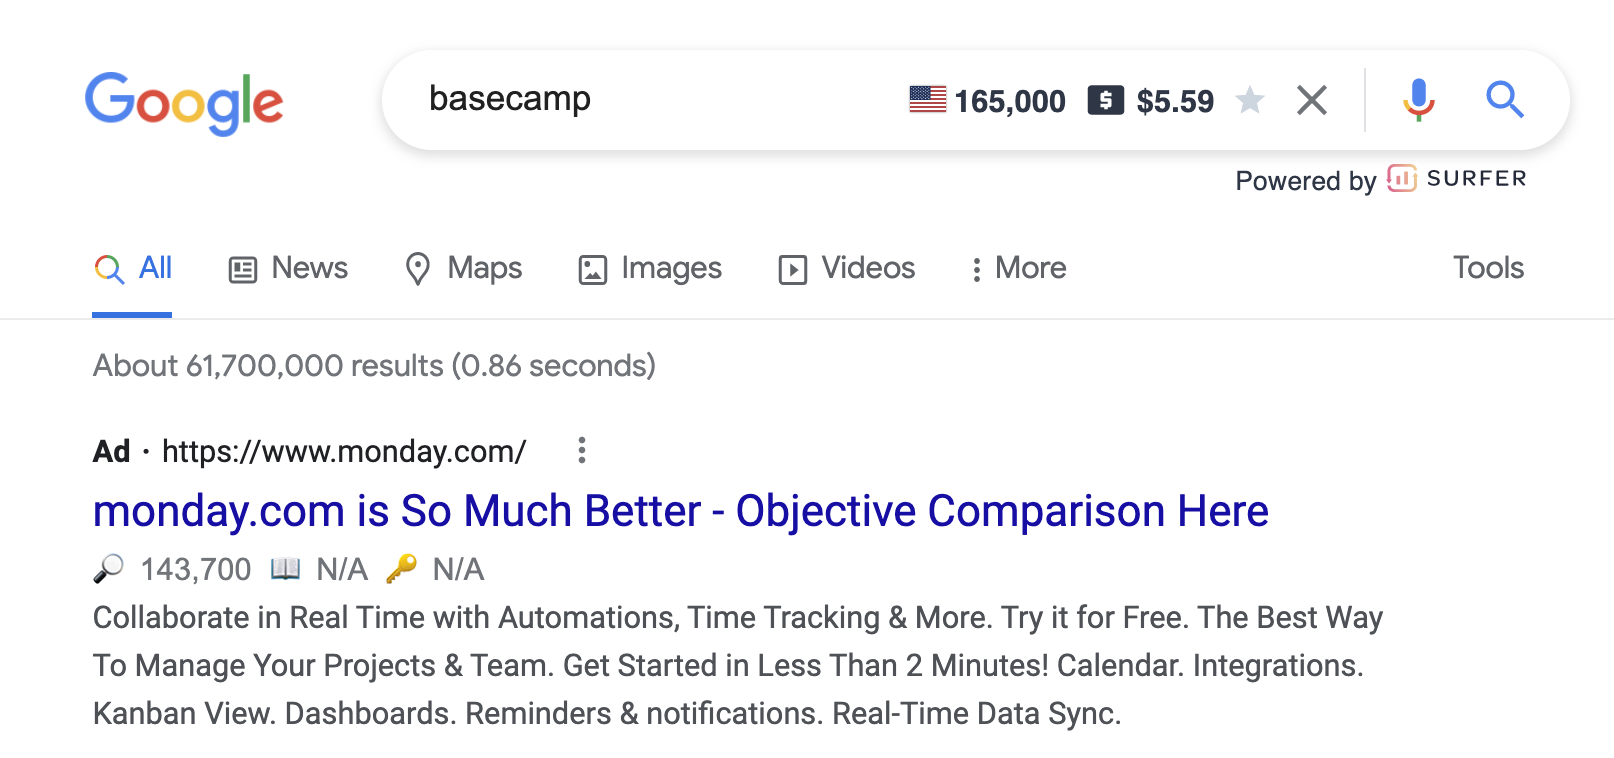 Lunes vs anuncio de google de basecamp.